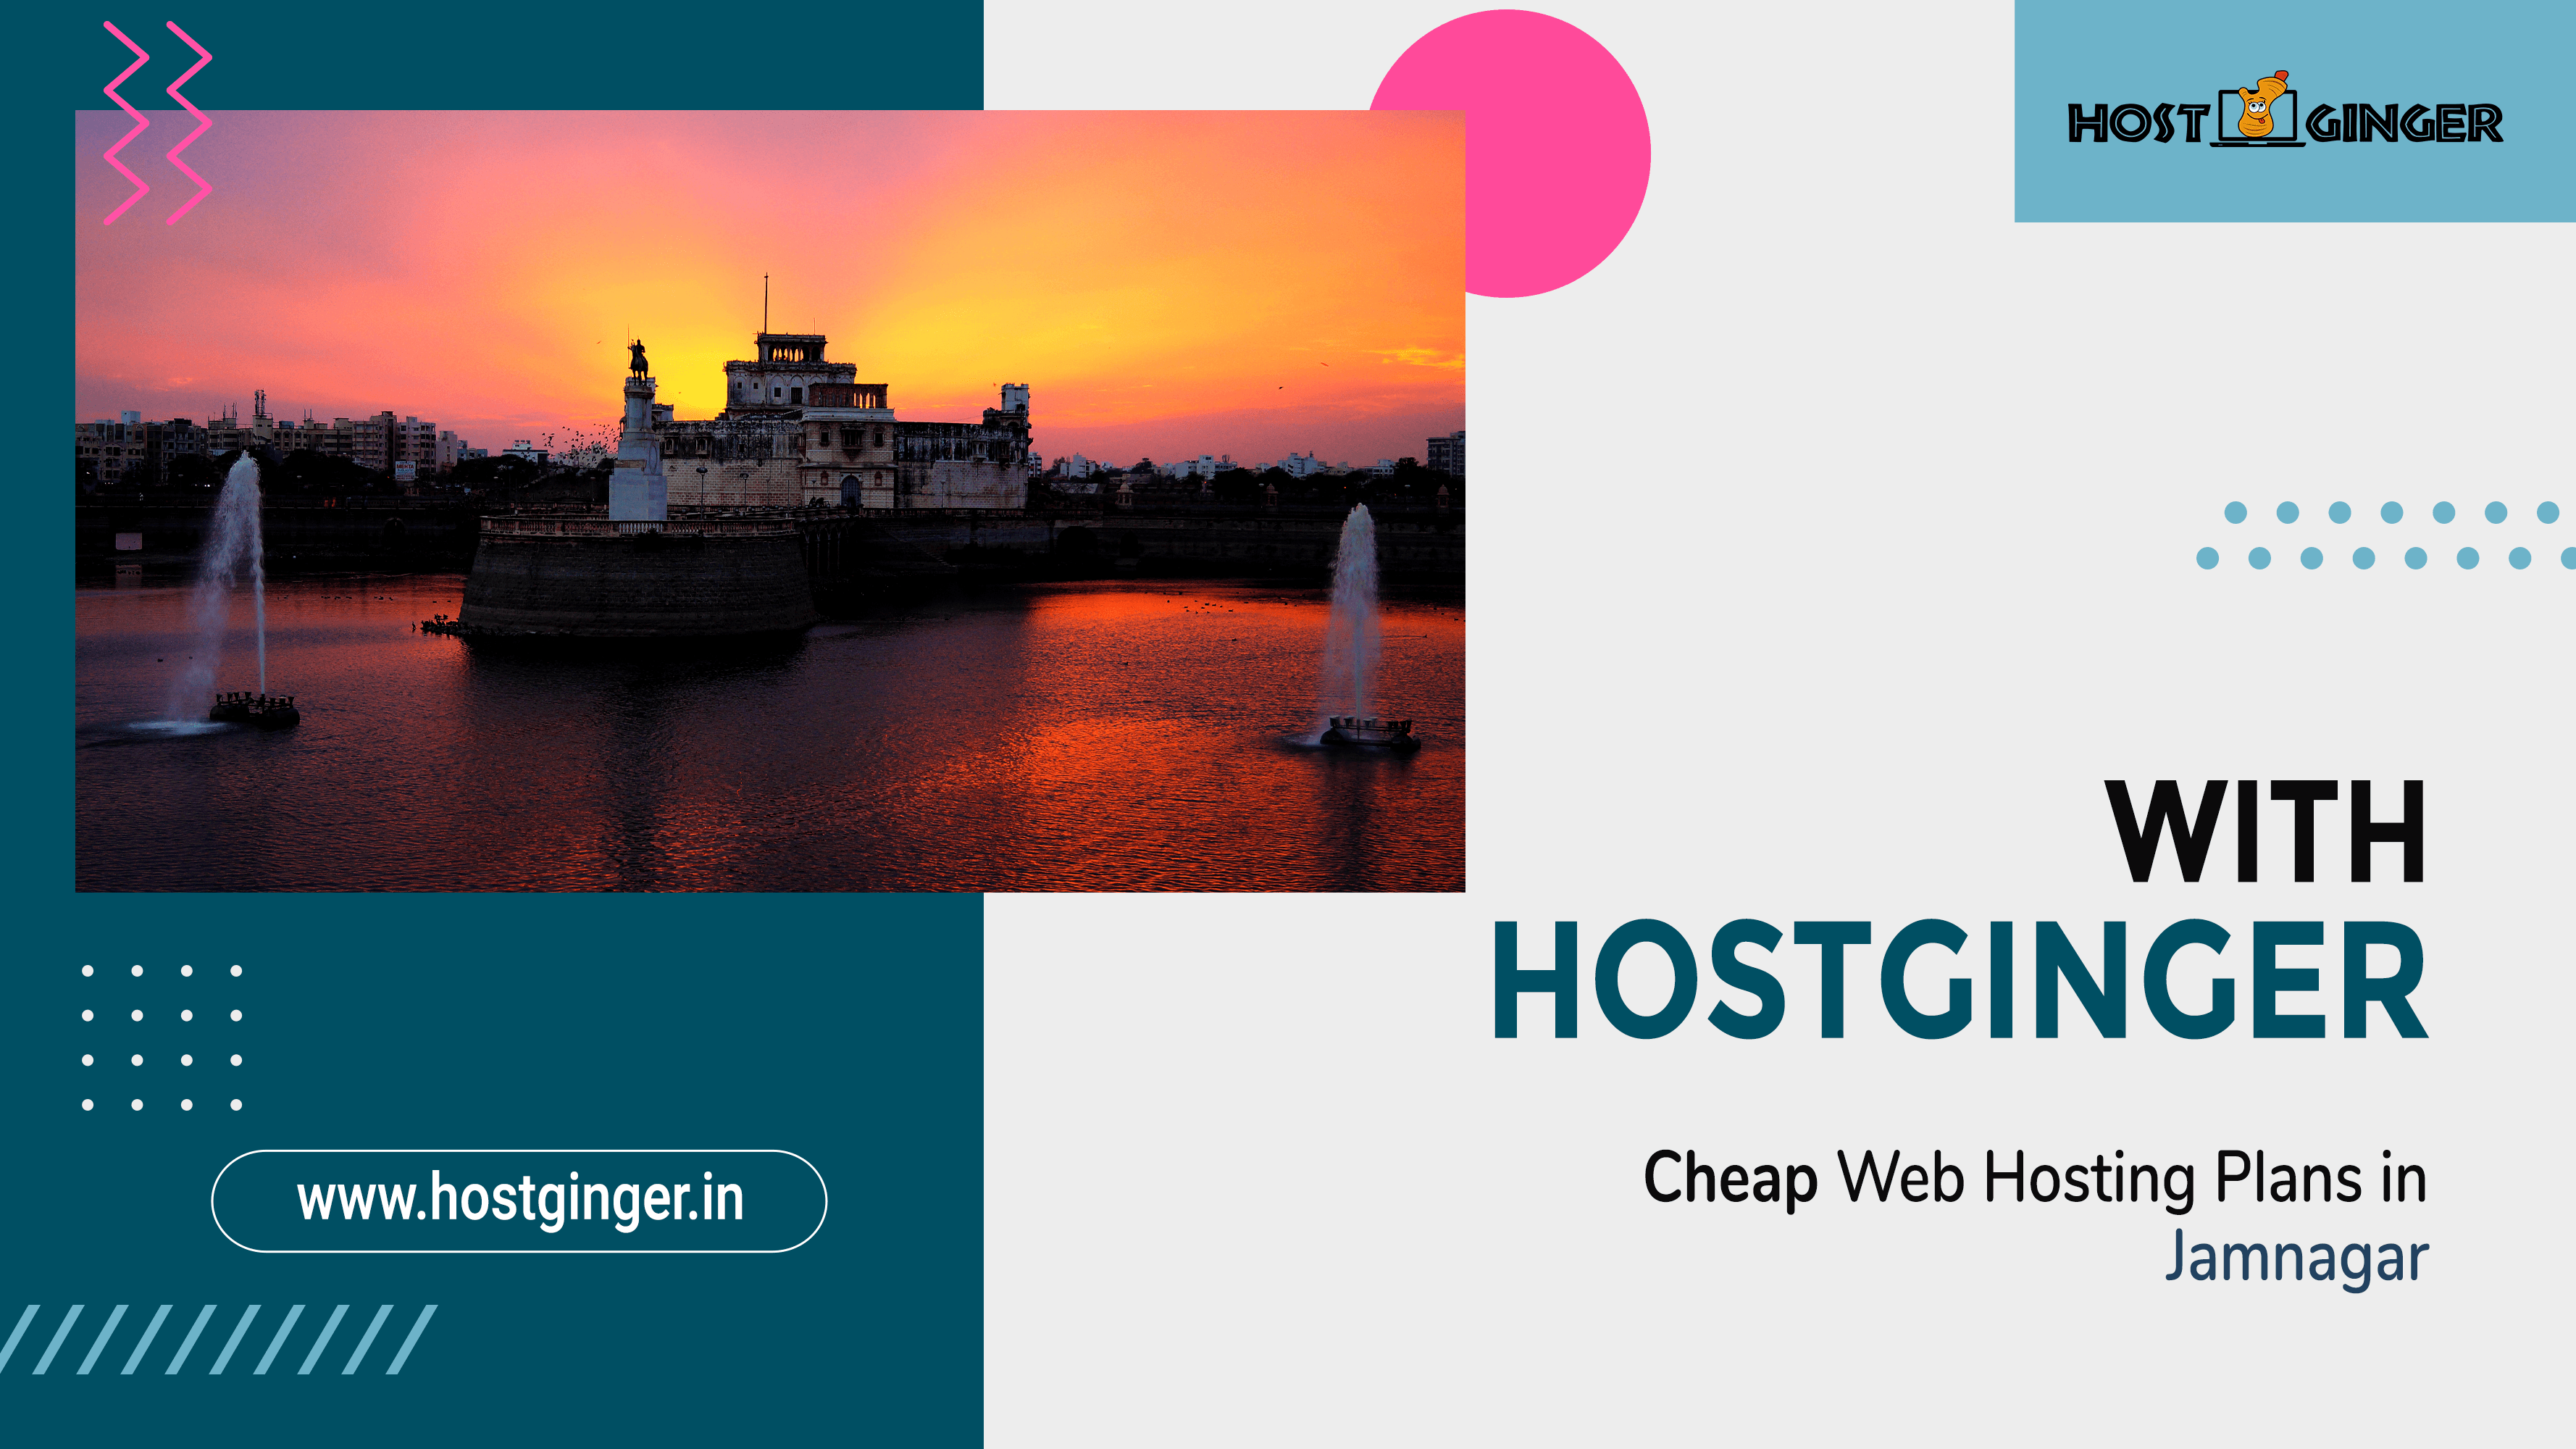 Affordable Web Hosting Plans in Jamnagar with Hostginger